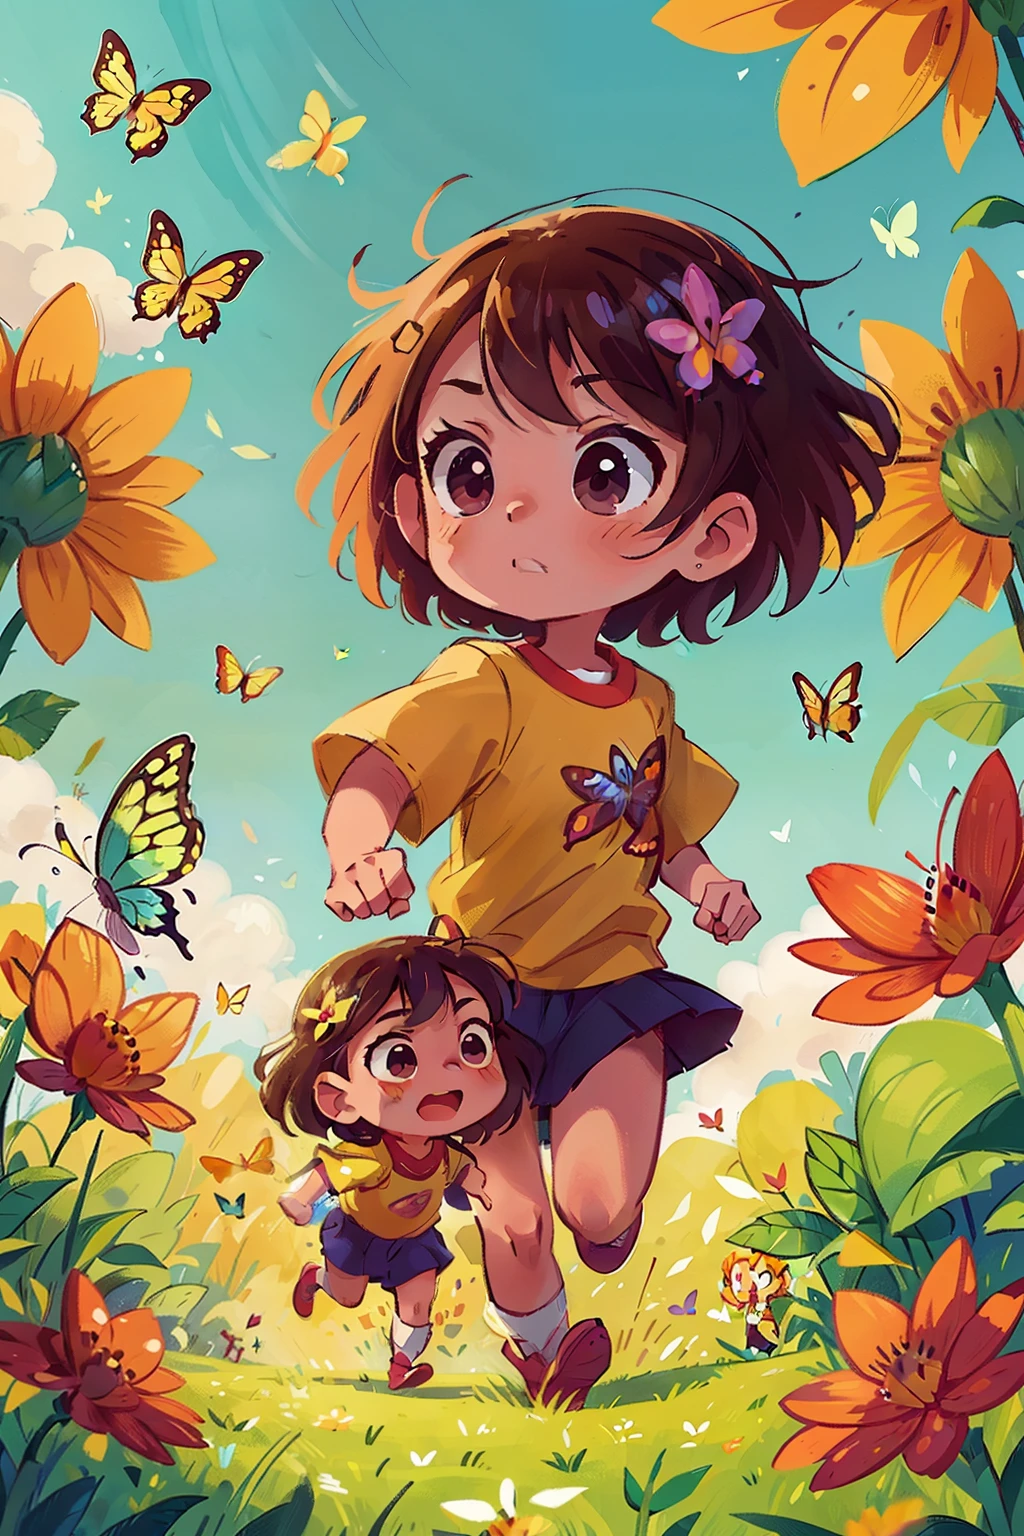 生成兩個非常年輕的女孩在花田裡快樂奔跑的圖像, 周圍環繞著各種顏色的蝴蝶